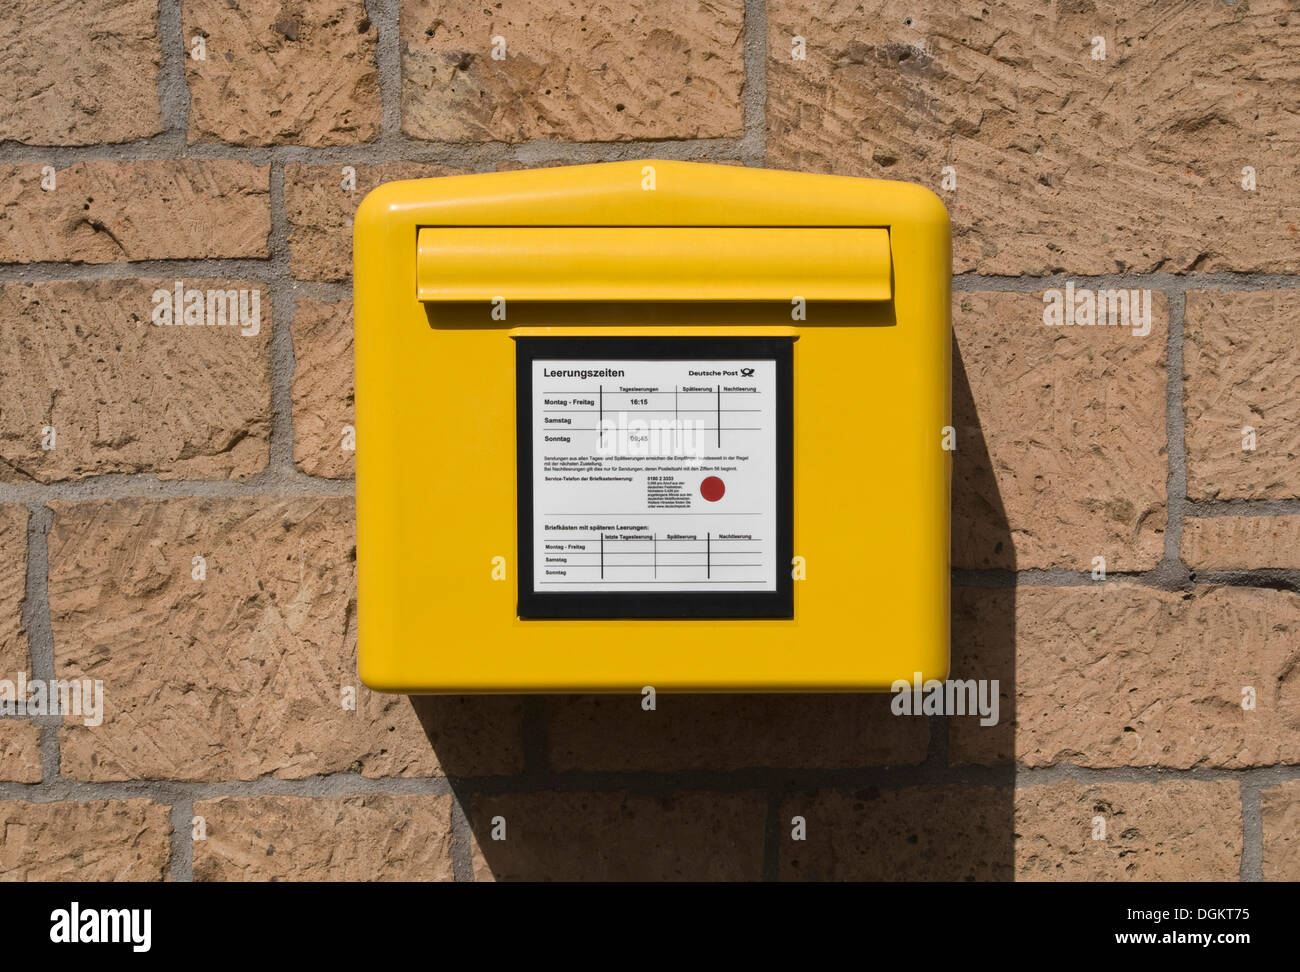 Boîte aux lettres jaune de la Deutsche Post avec un tableau de collecte quotidienne Banque D'Images